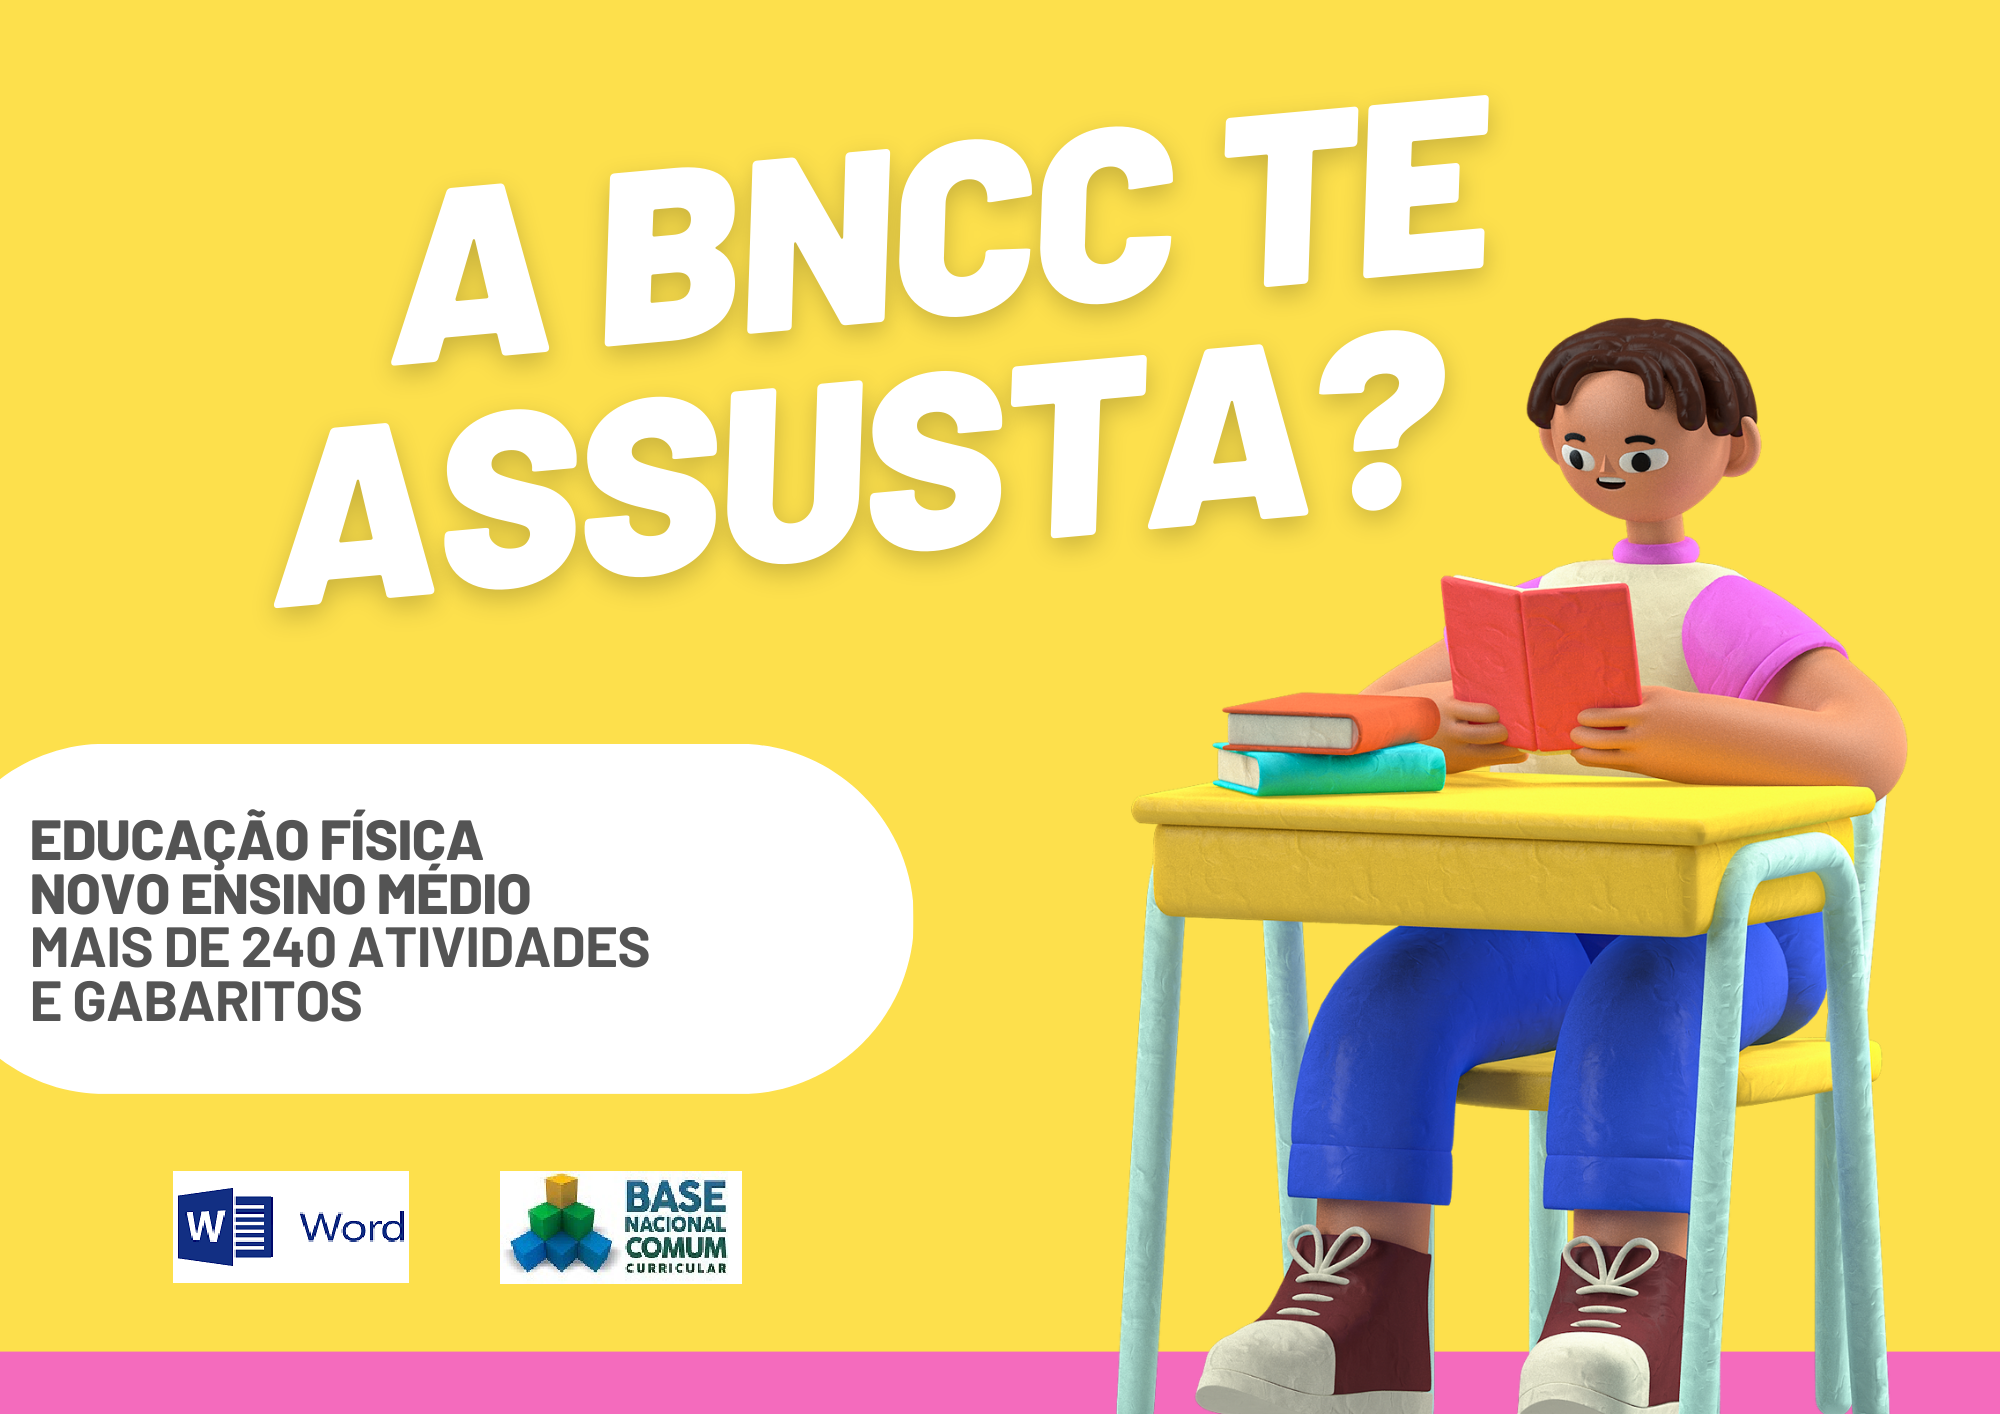 A BNCC te assusta educação física novo ensino médio mais de 240 atividades e gabaritos com um aluno segurando um livro e os símbolos do Word e da BNCC